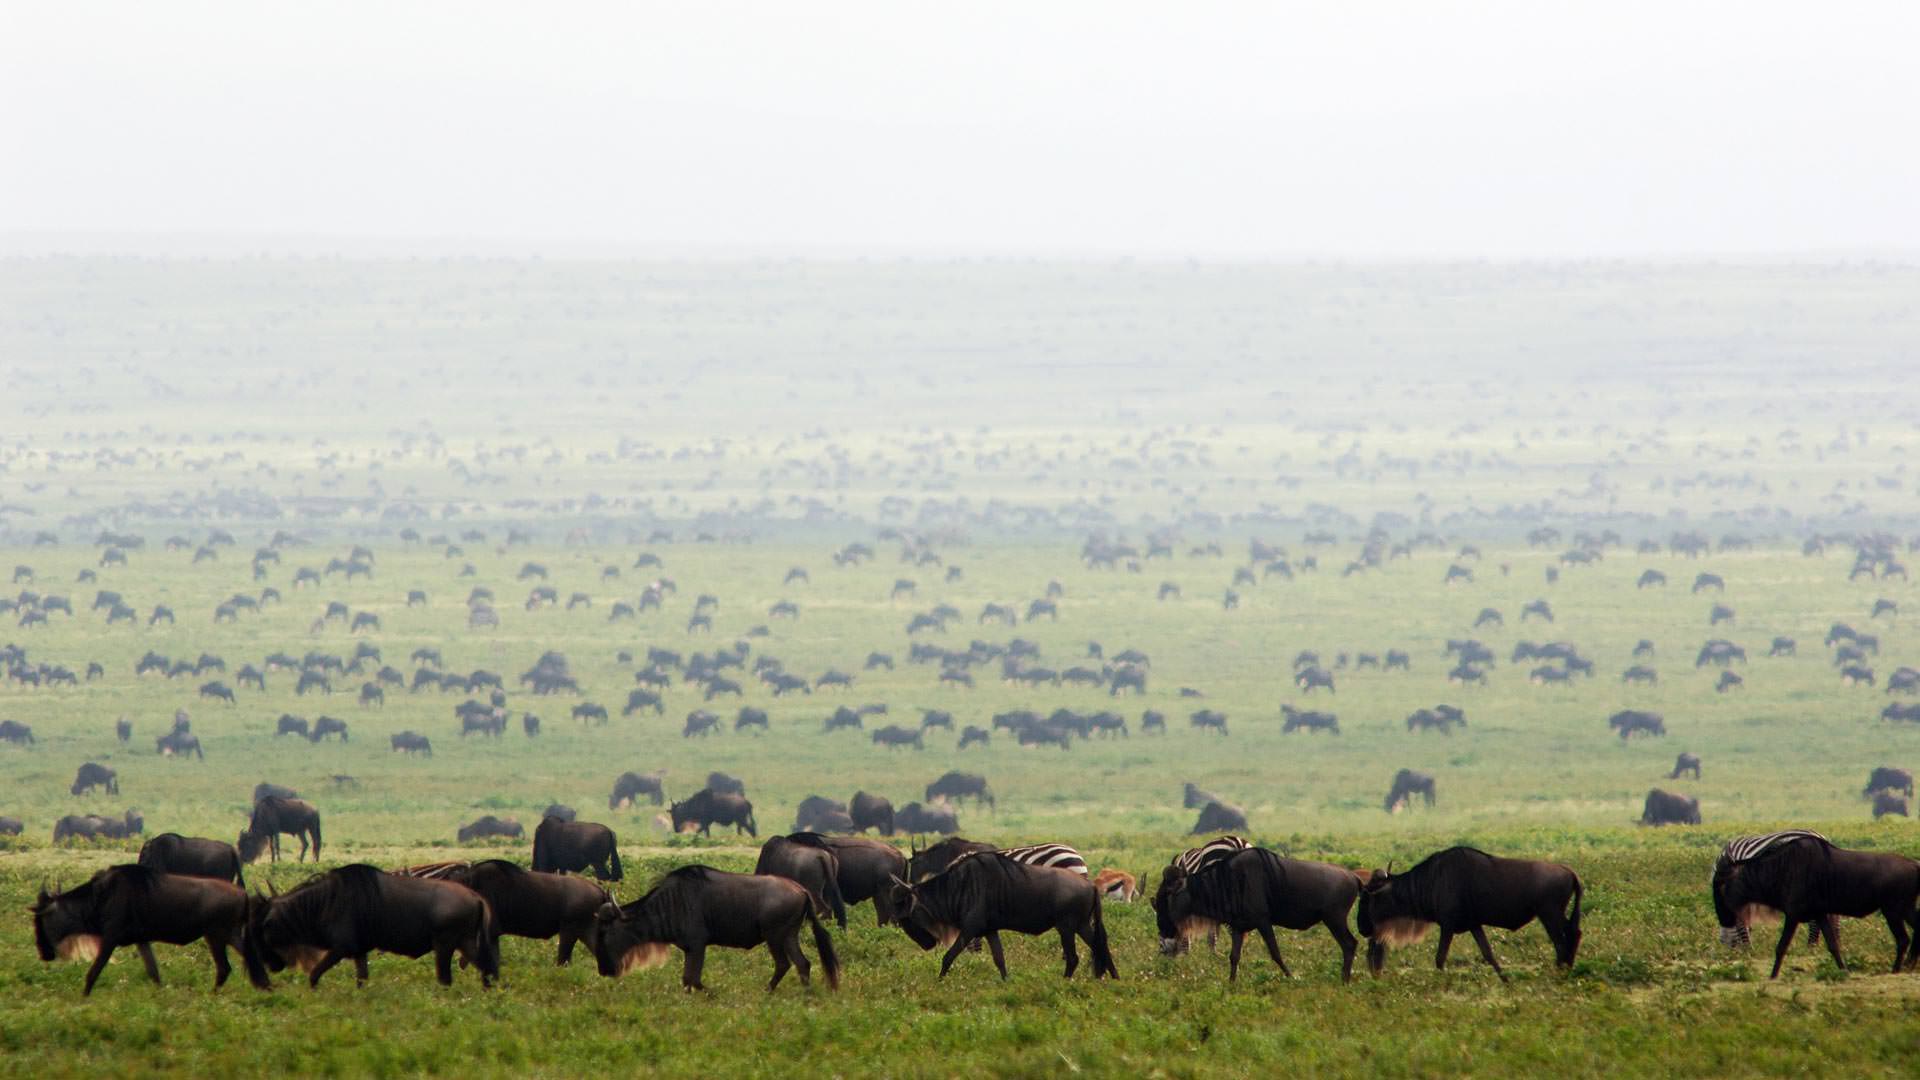 Wildebeest herds in Serengeti